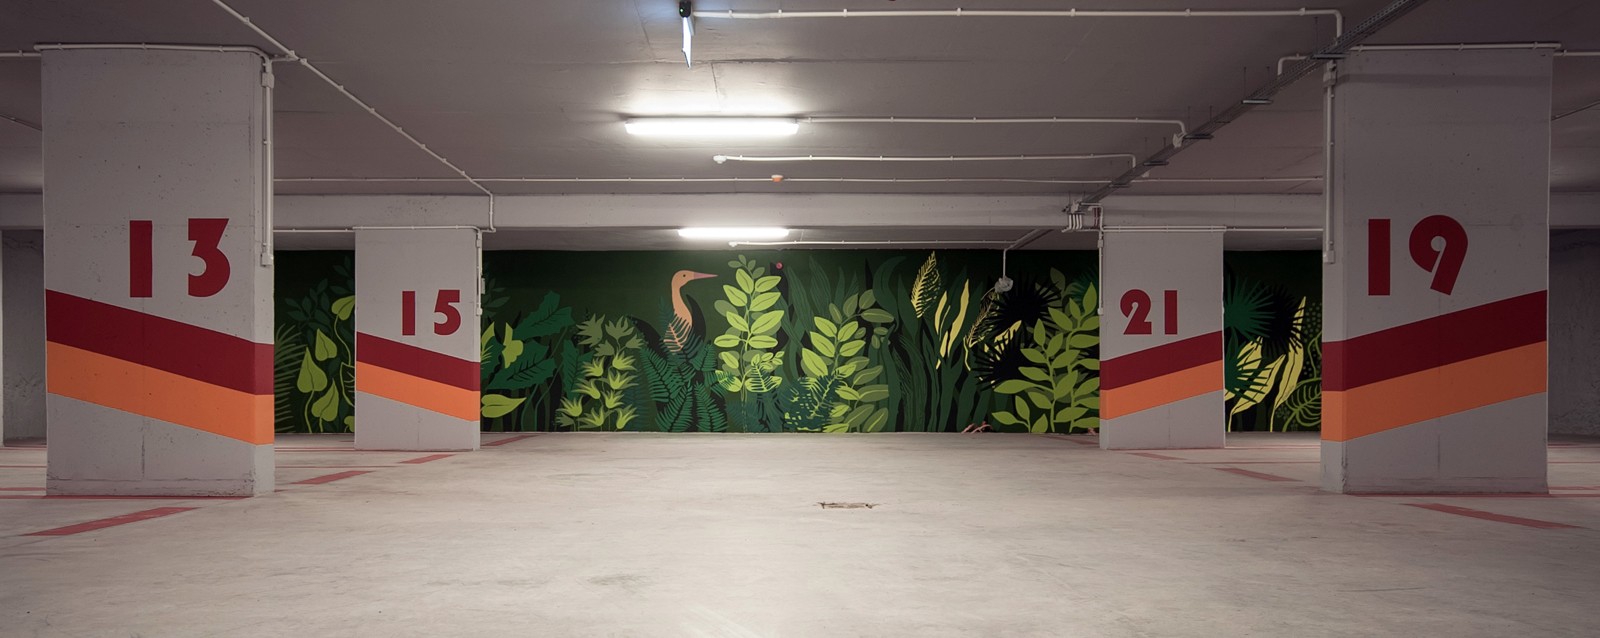 Apartamentowiec Dynasy w Warszawie Parking Podziemny mural artystyczny | Mural we wnętrzu apartamentowca | Portfolio